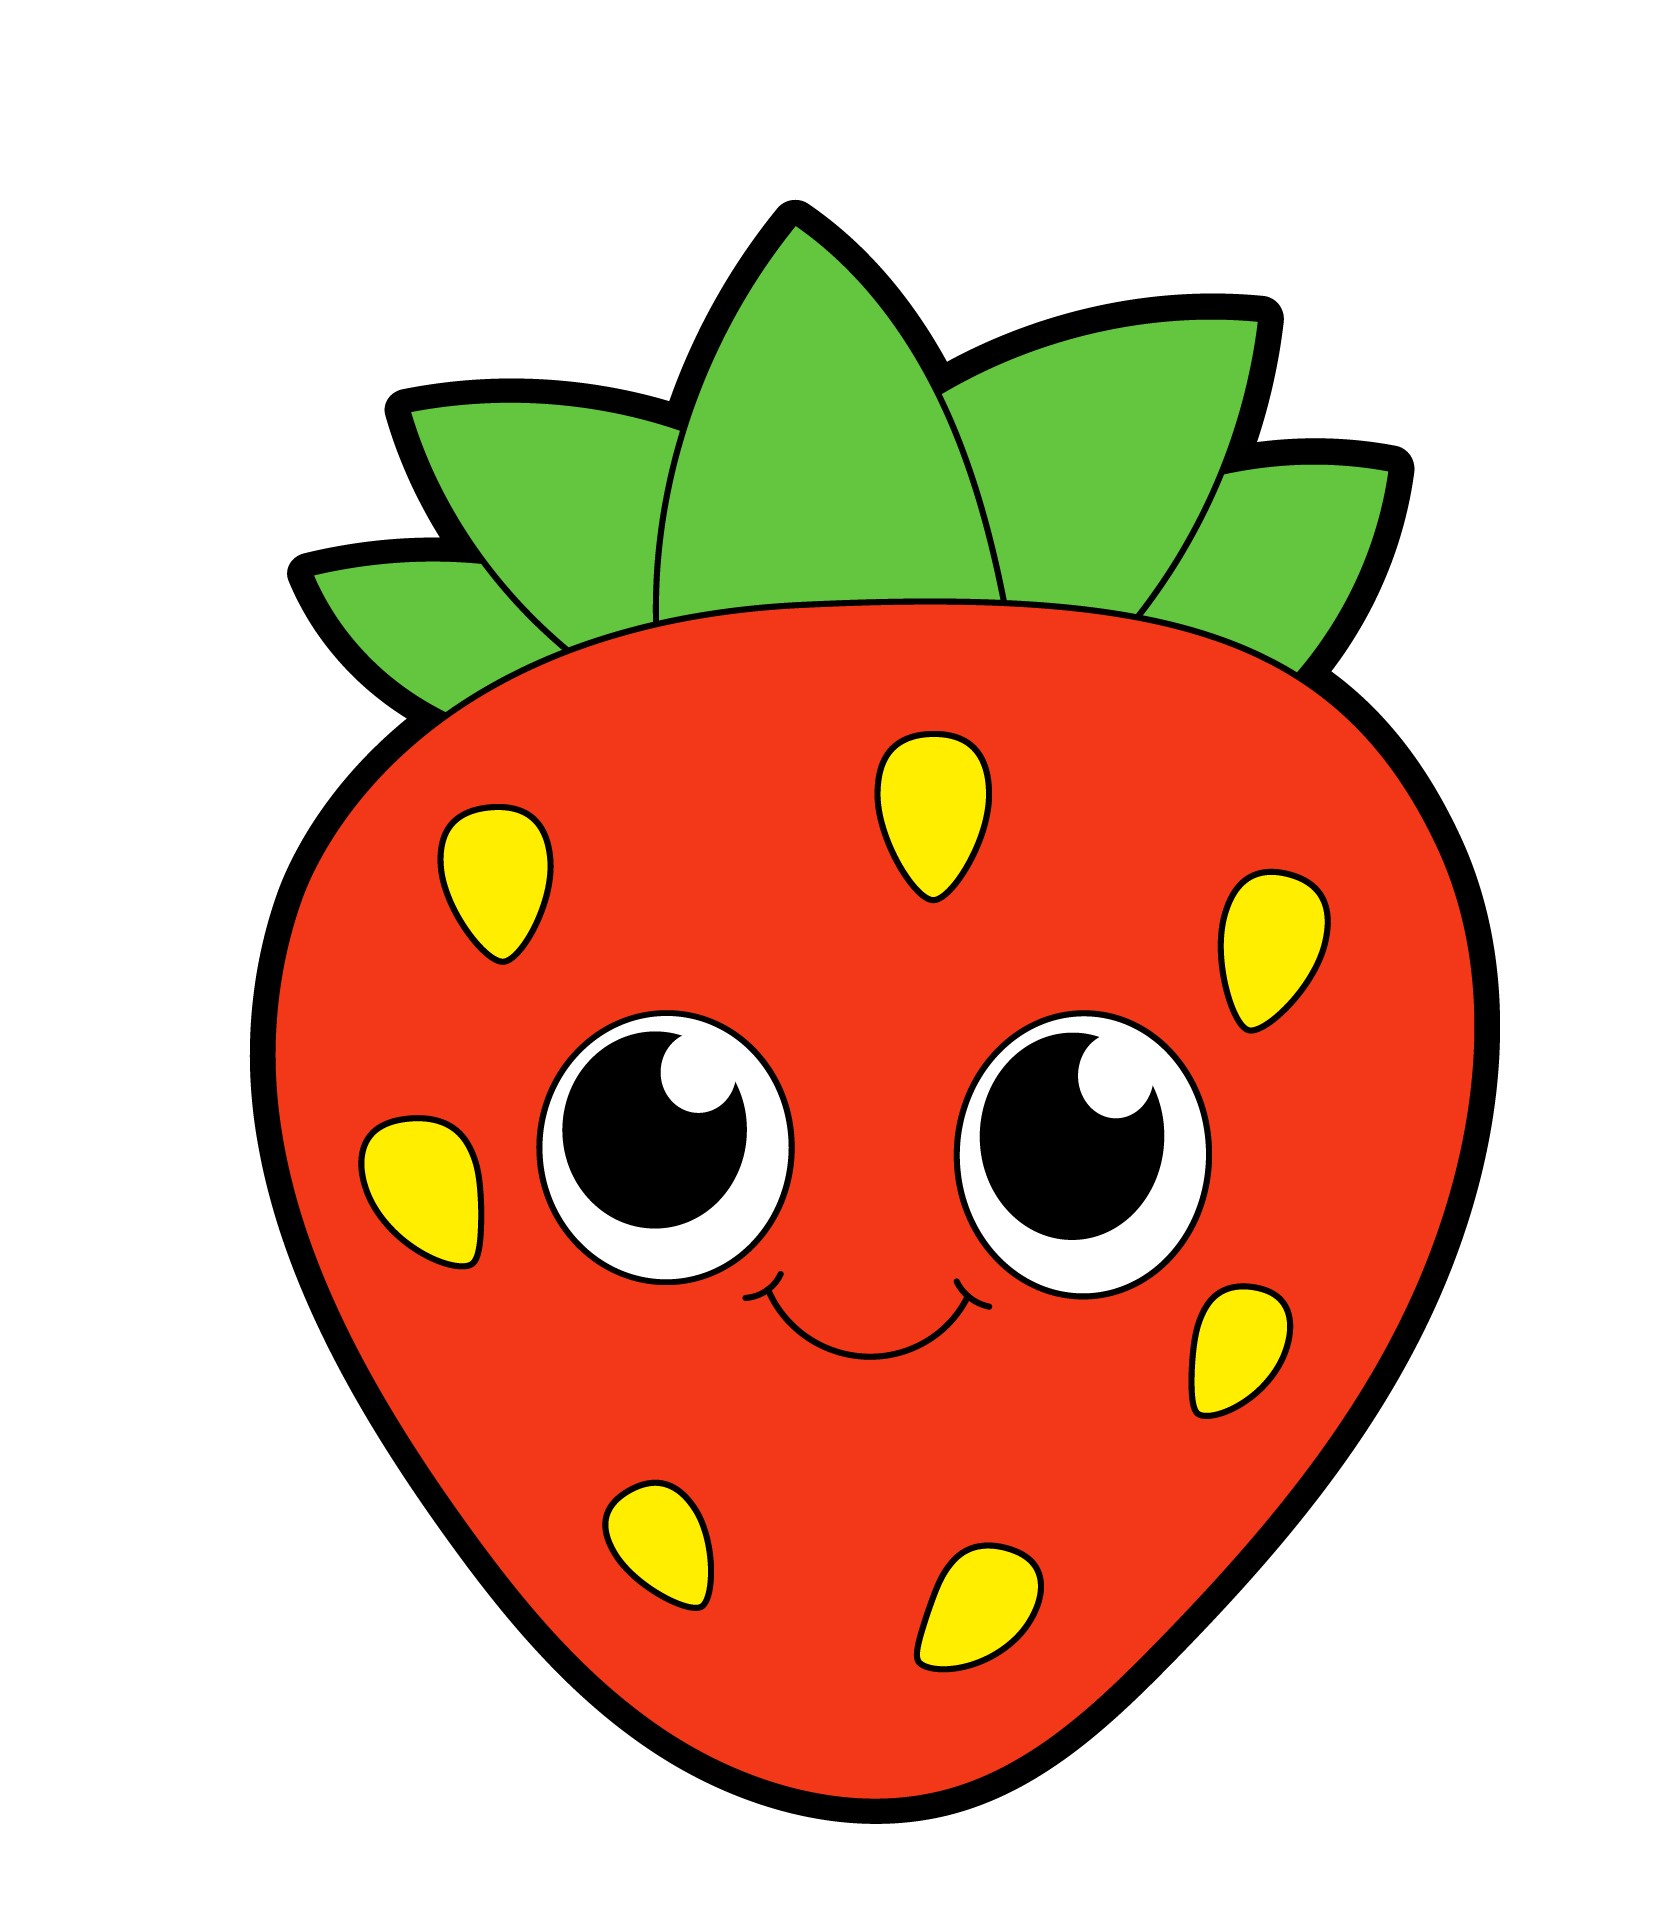 Образец раскрашенной картинки сказочная ягода клубники с большими глазами